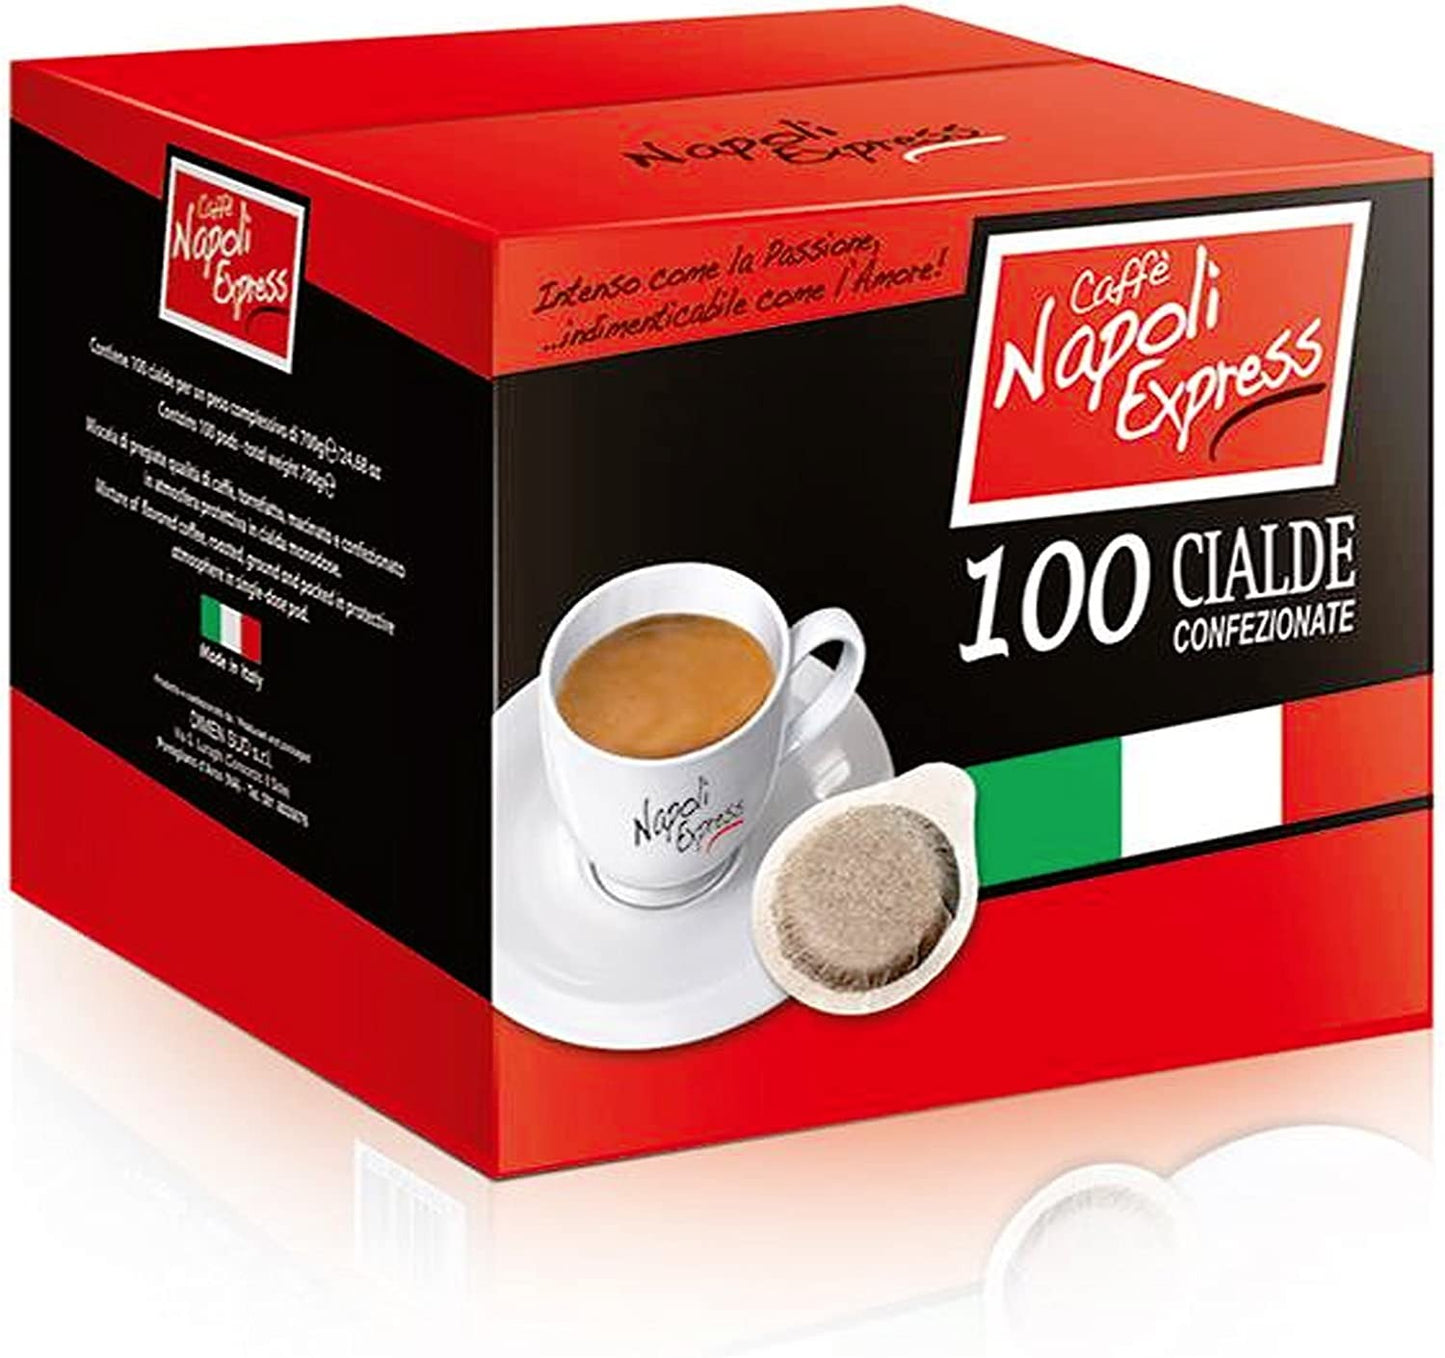 100 CAFFE' IN CIALDE NAPOLI EXPRESS GUSTO INTENSO VERO ESPRESSO NAPOLETANO